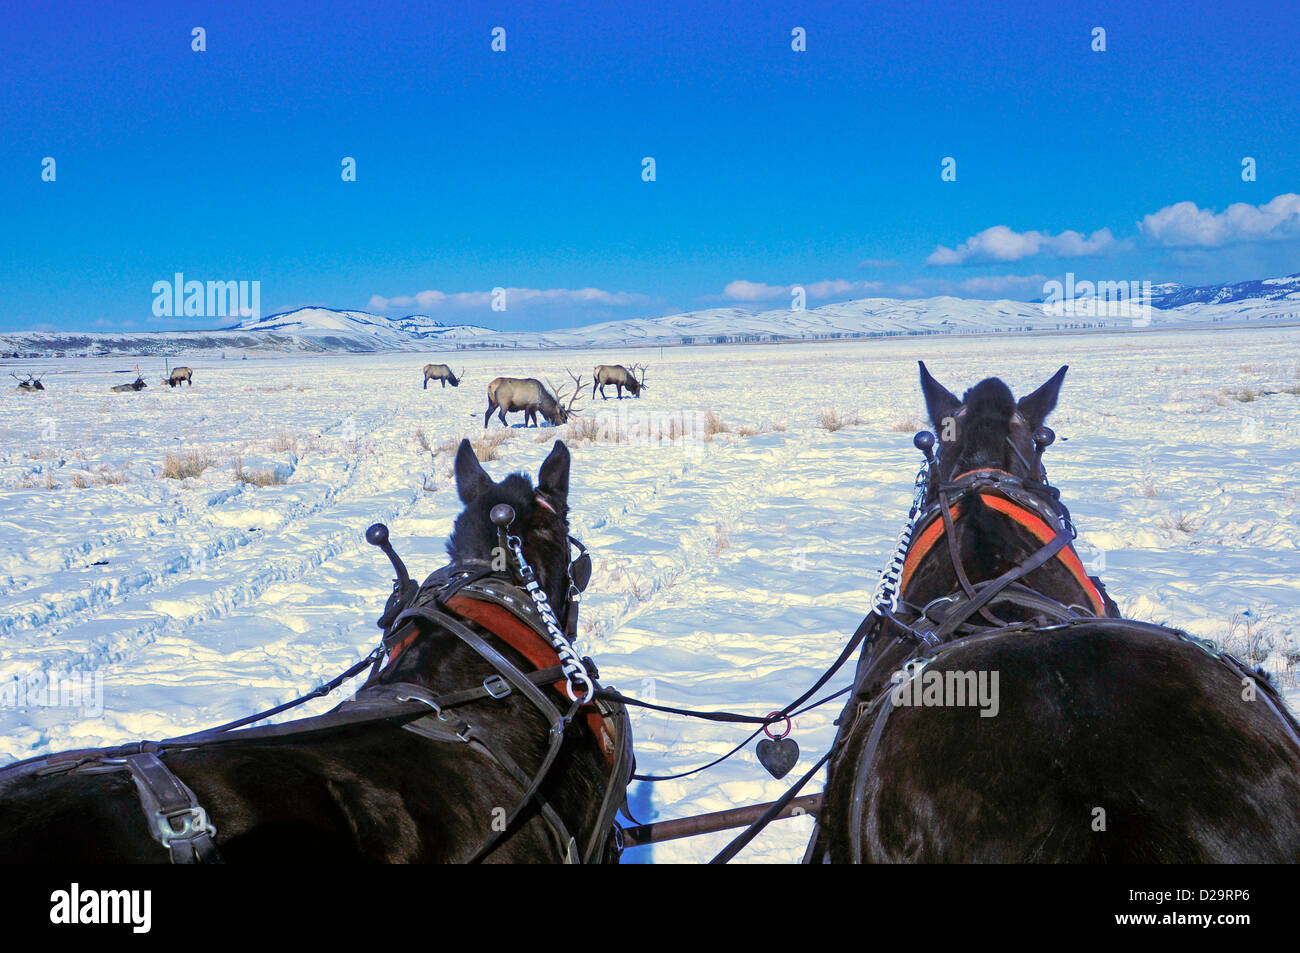 Horses, Jackson Hole, Wyoming Stock Photo